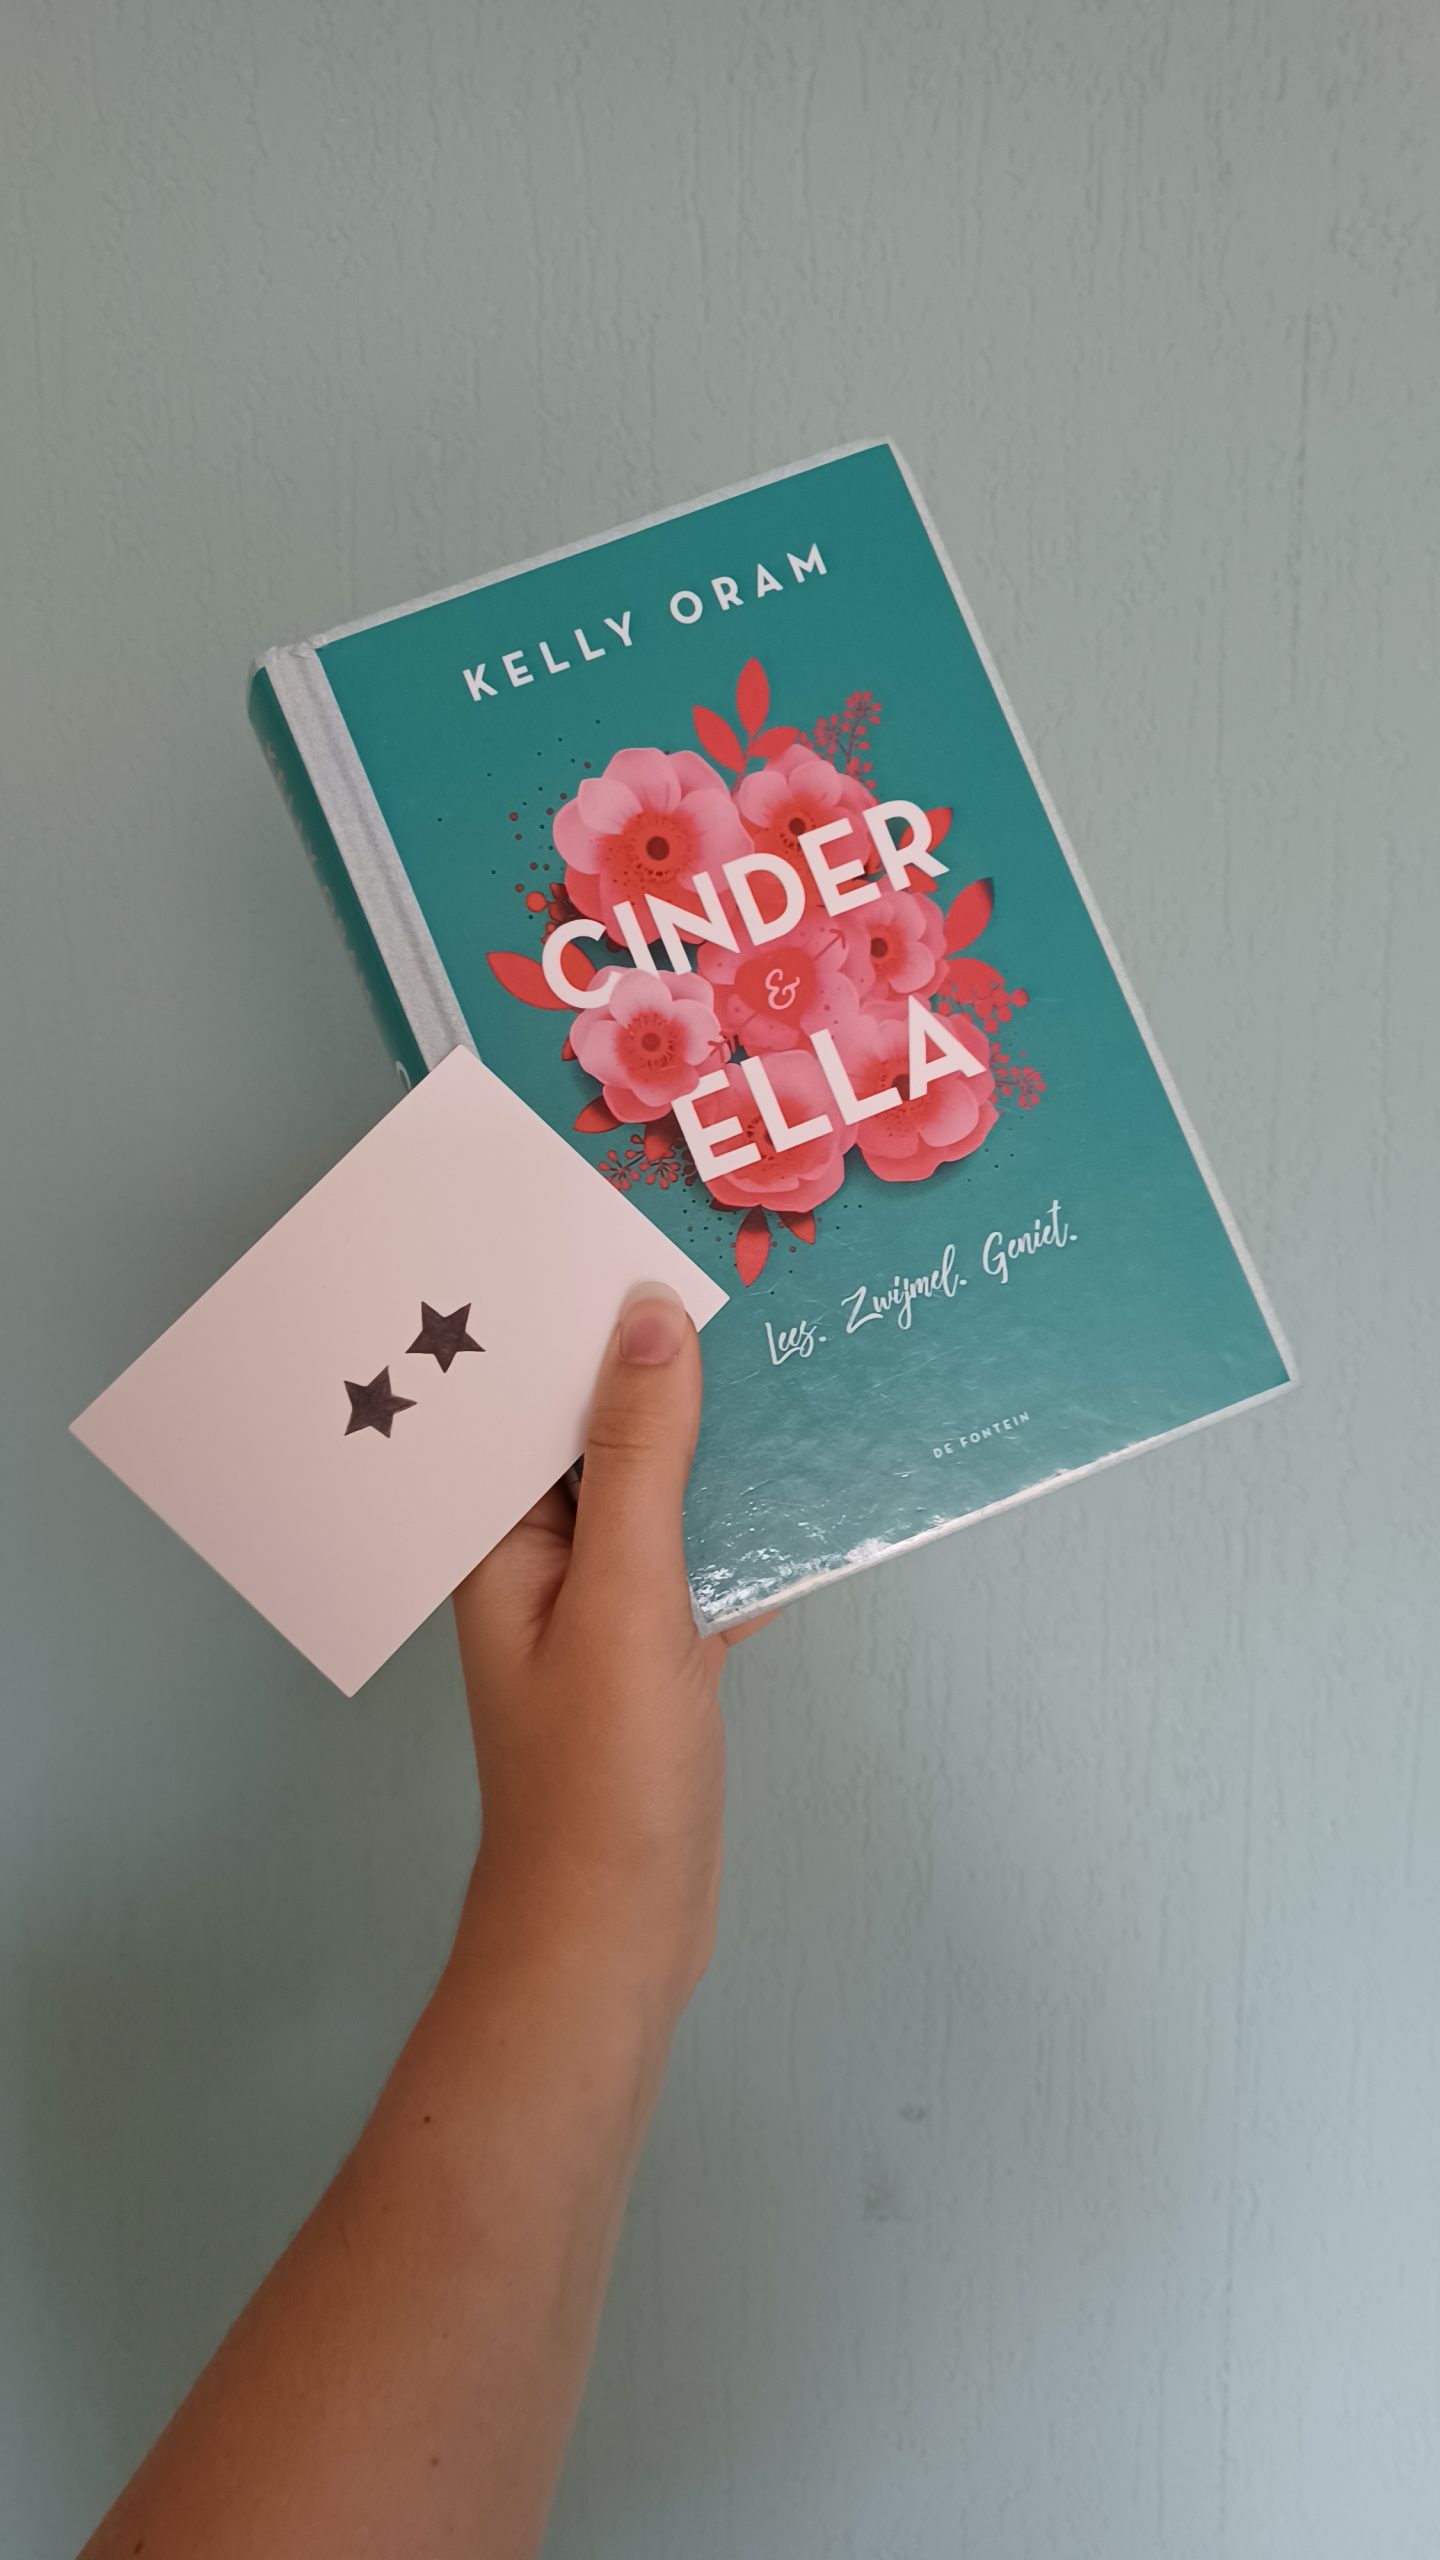 Boekrecensie: Cinder & Ella – Kelly Oram